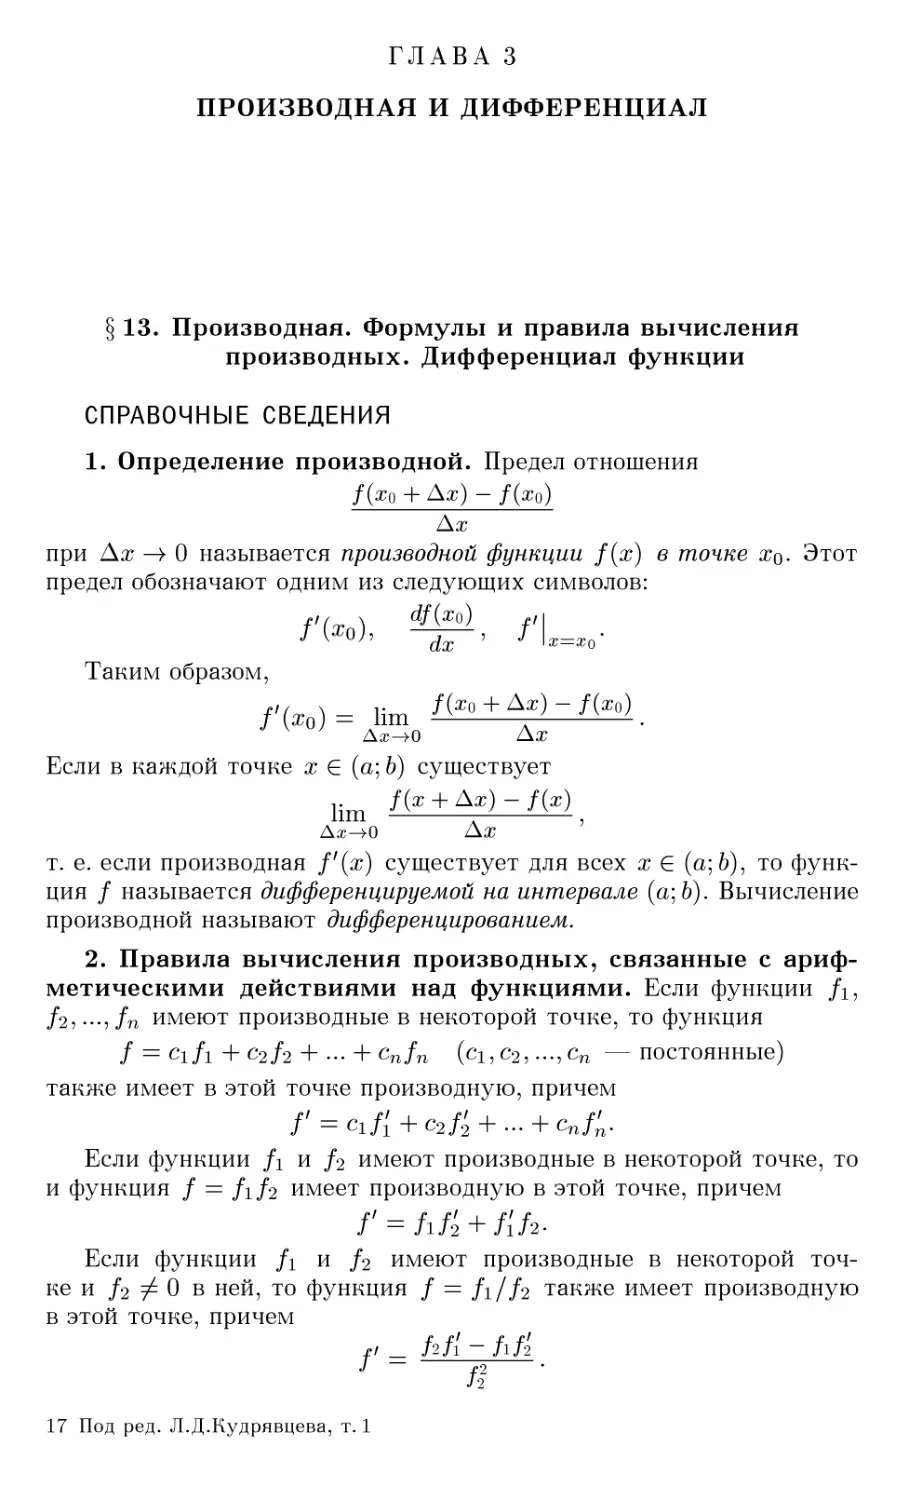 ГЛАВА 3 ПРОИЗВОДНАЯ И ДИФФЕРЕНЦИАЛ
§13. Производная. Формулы и правила вычисления производных. Дифференциал функции